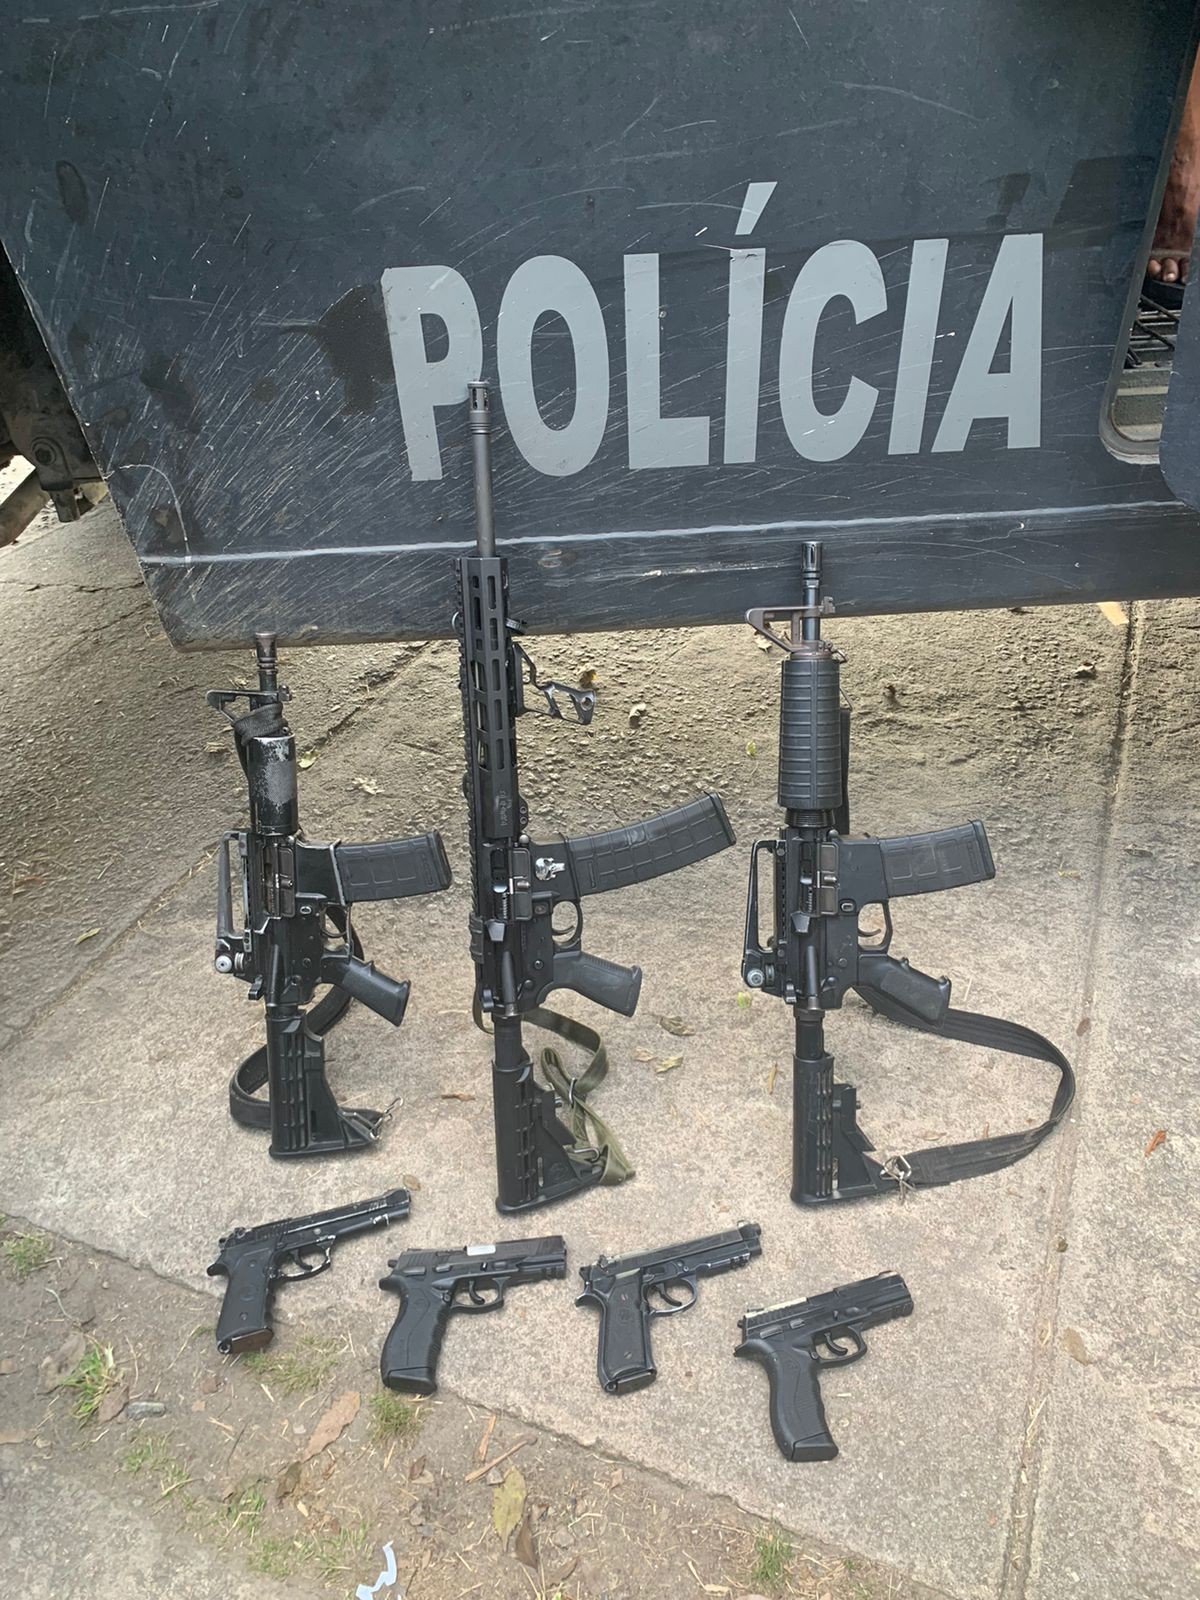 Três fuzis e quatro pistolas também foram apreendidos durante a operação — Foto: Divulgação / Polícia Militar